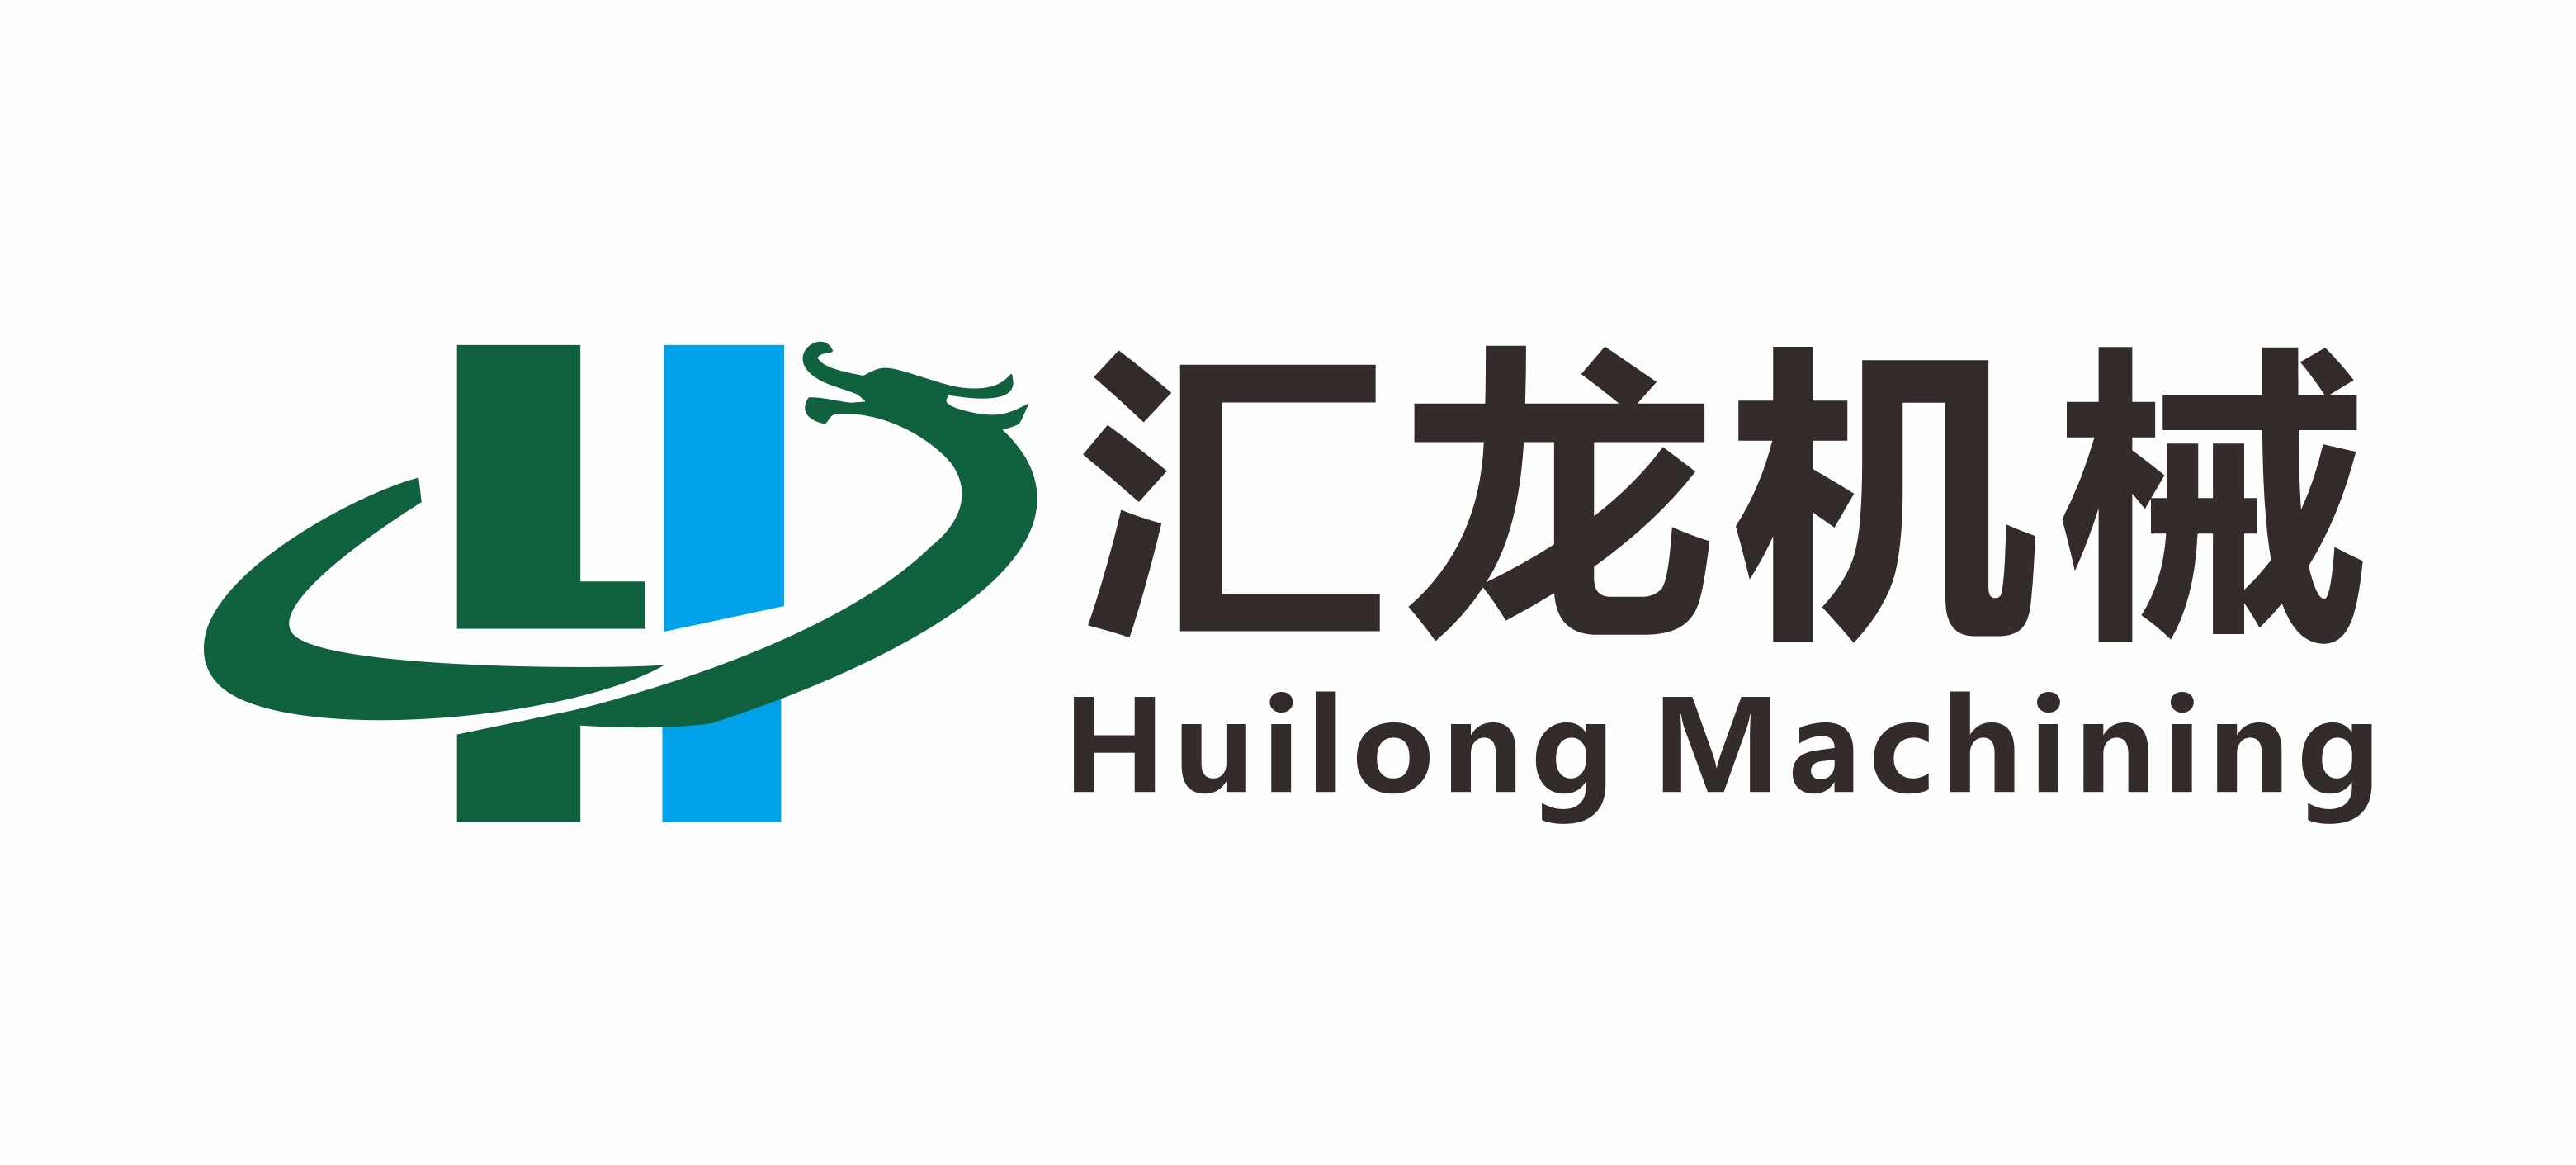 Huizhou Huilong Hardware Machinery Co., Ltd